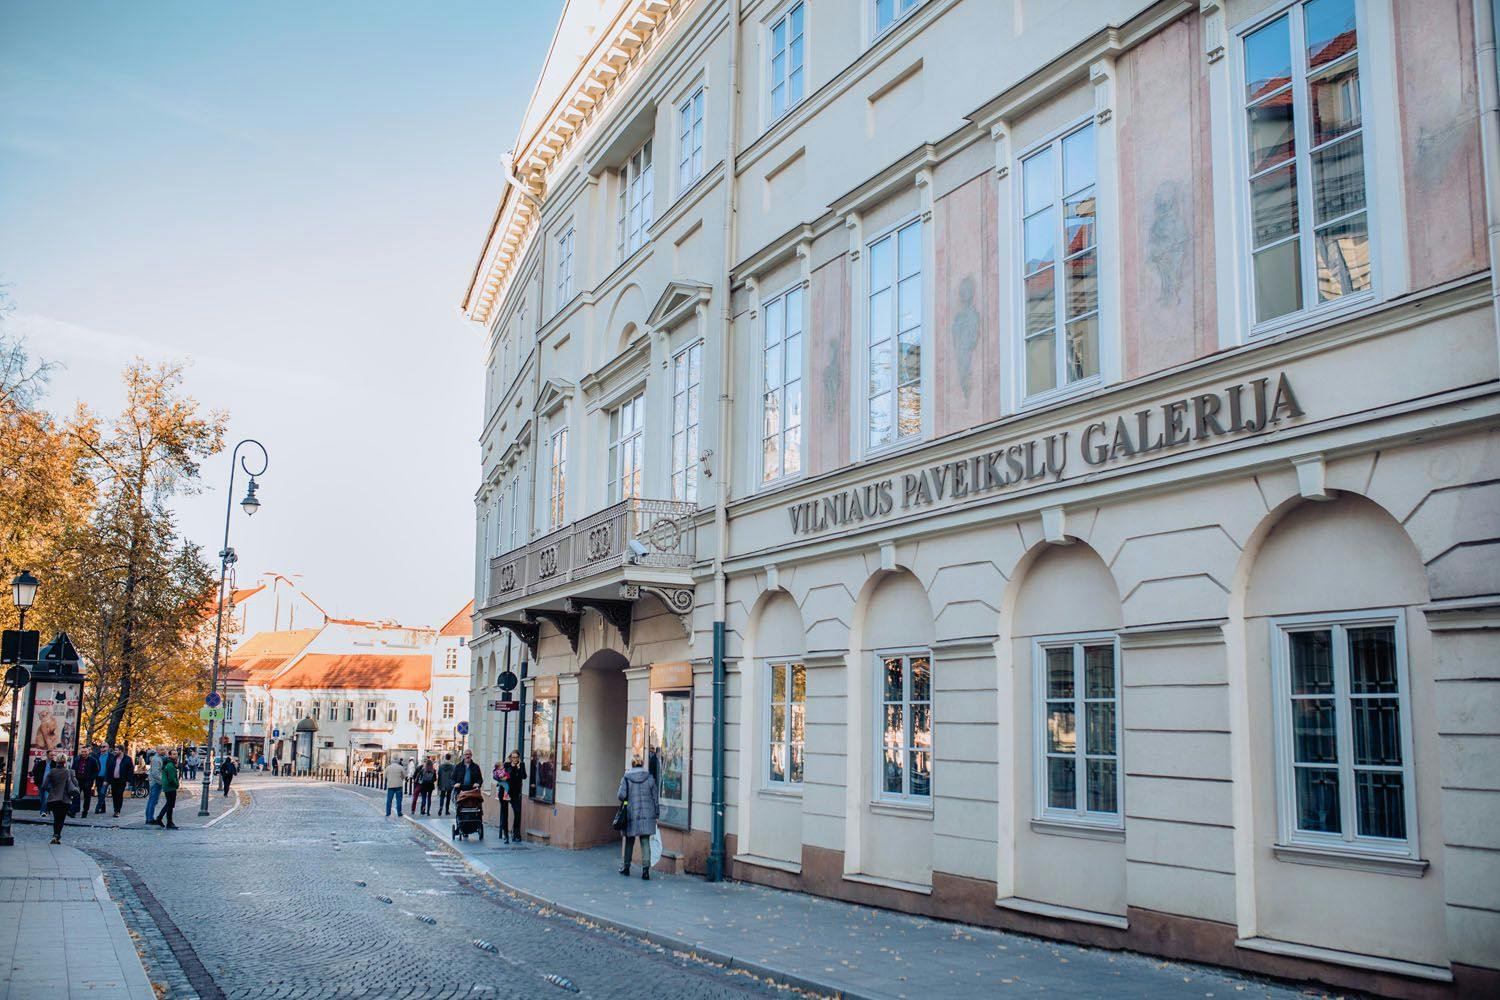 Vilniaus paveikslų galerija